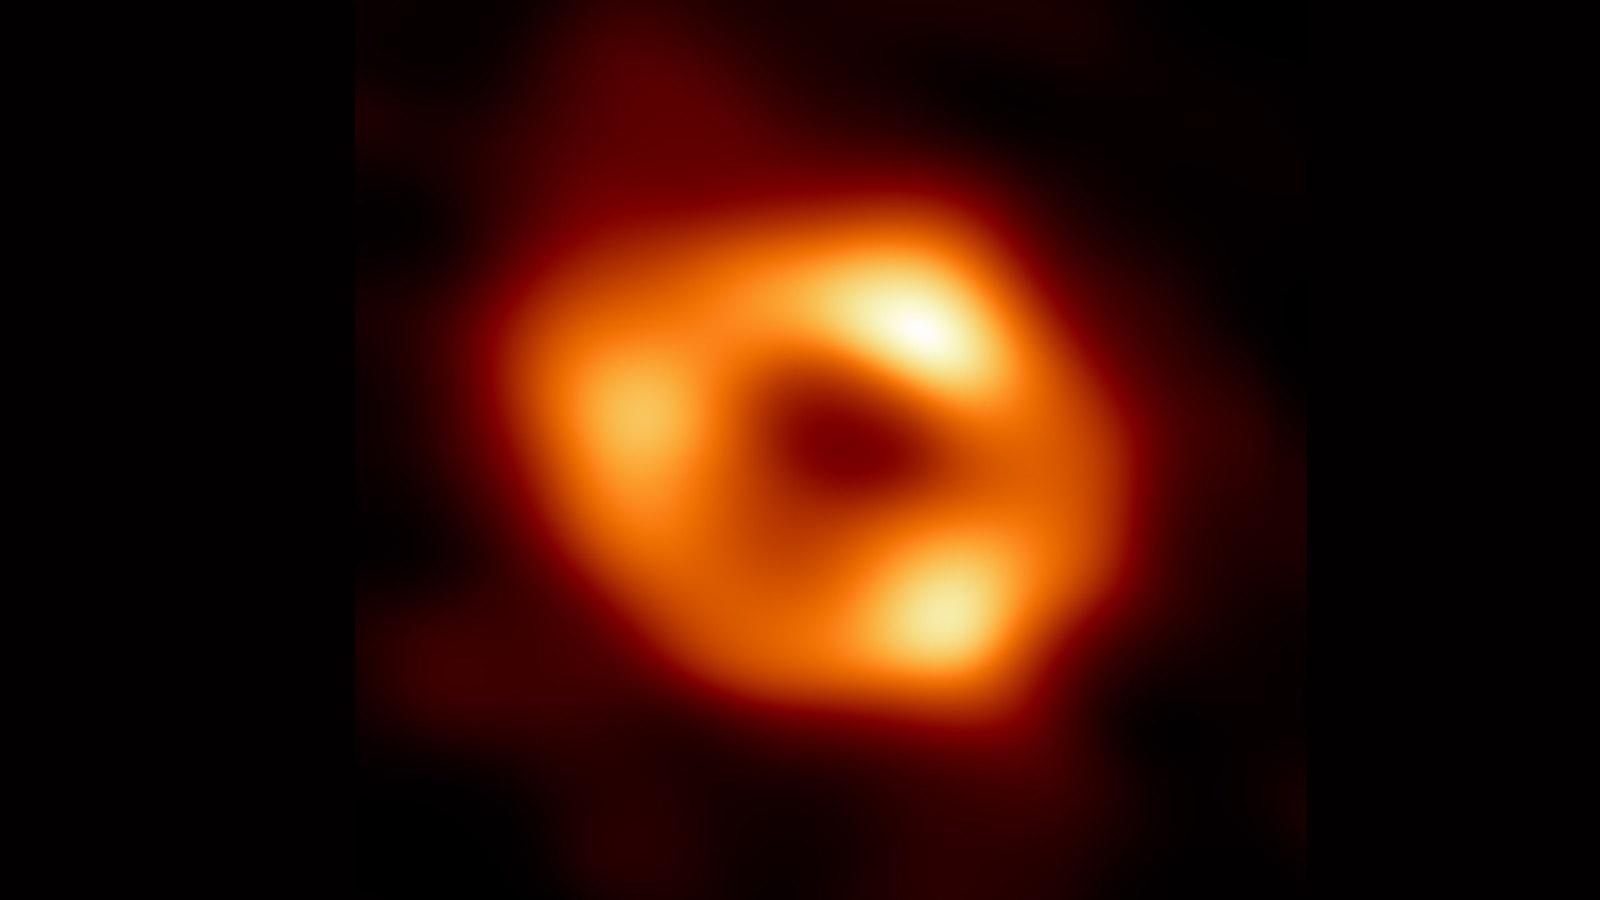 SagittariusA-trou-noir.jpg